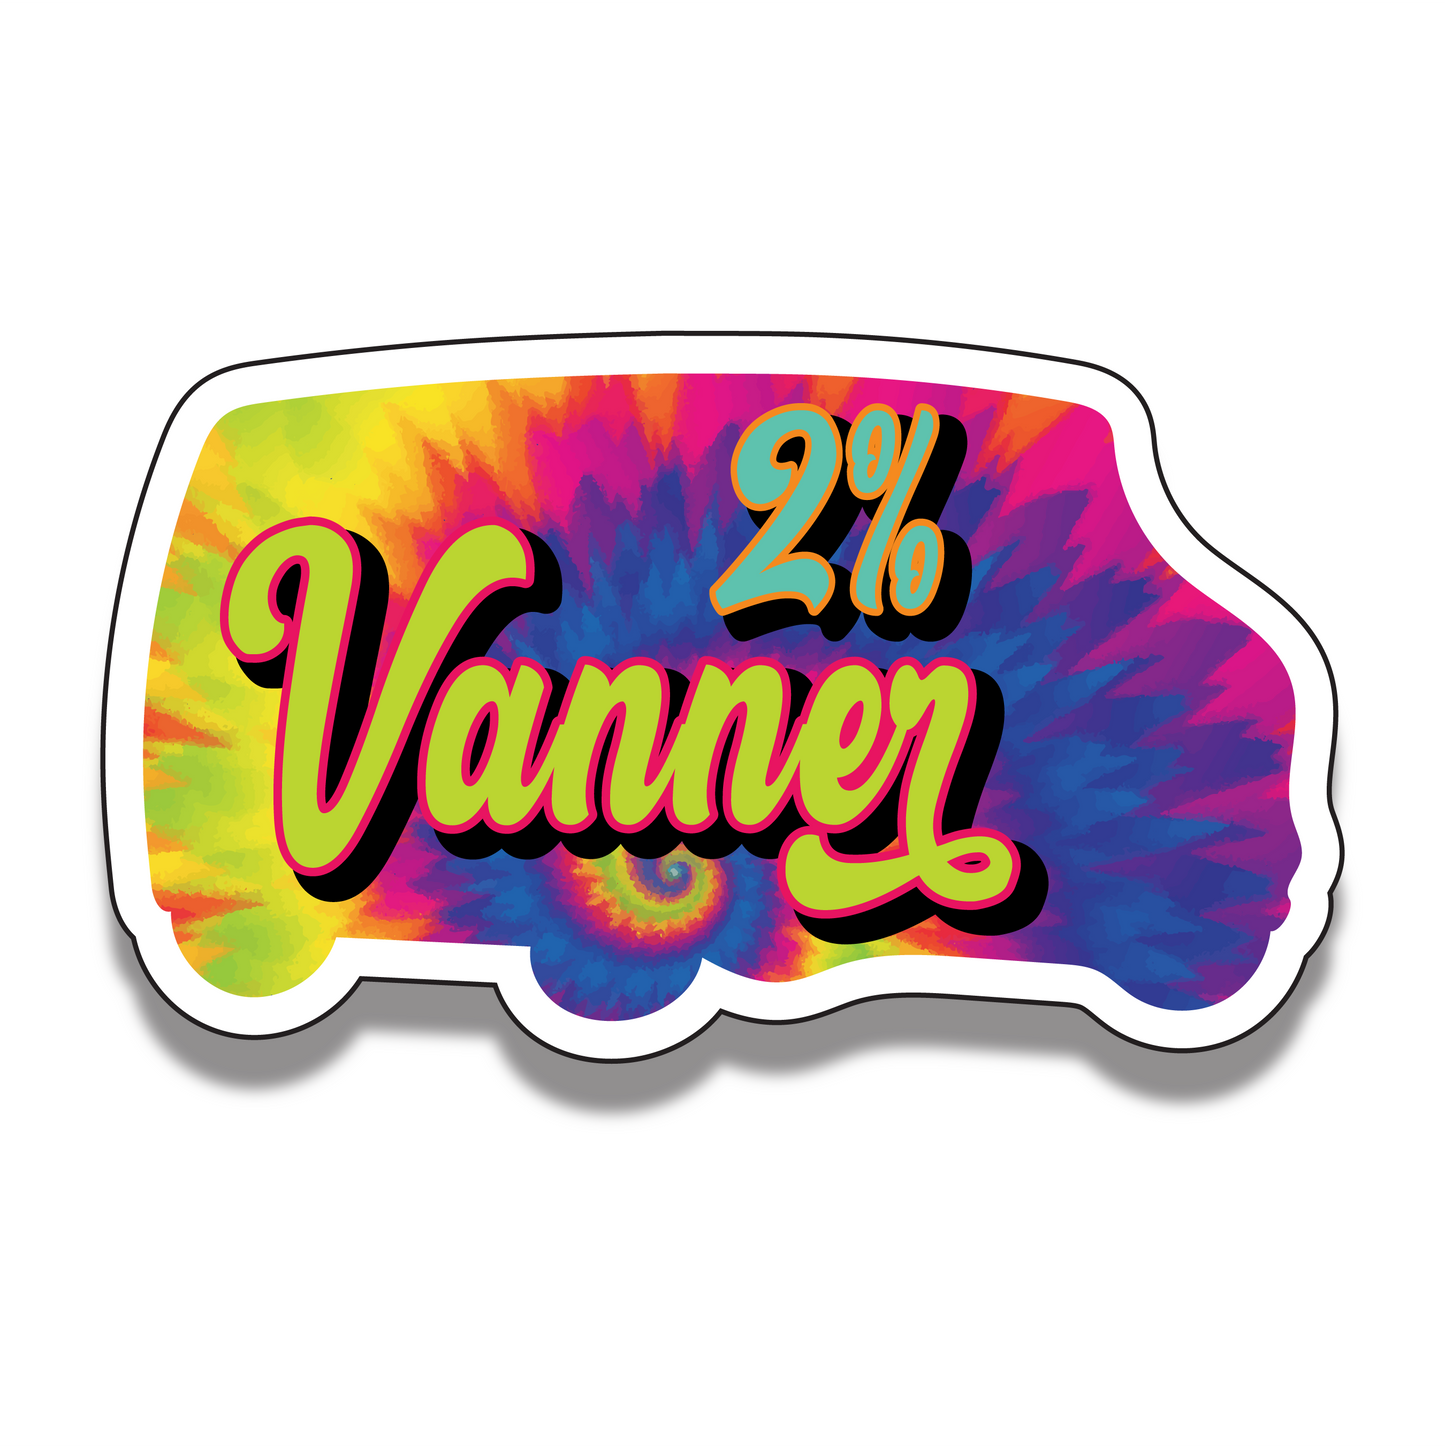 2% Vanner Sticker